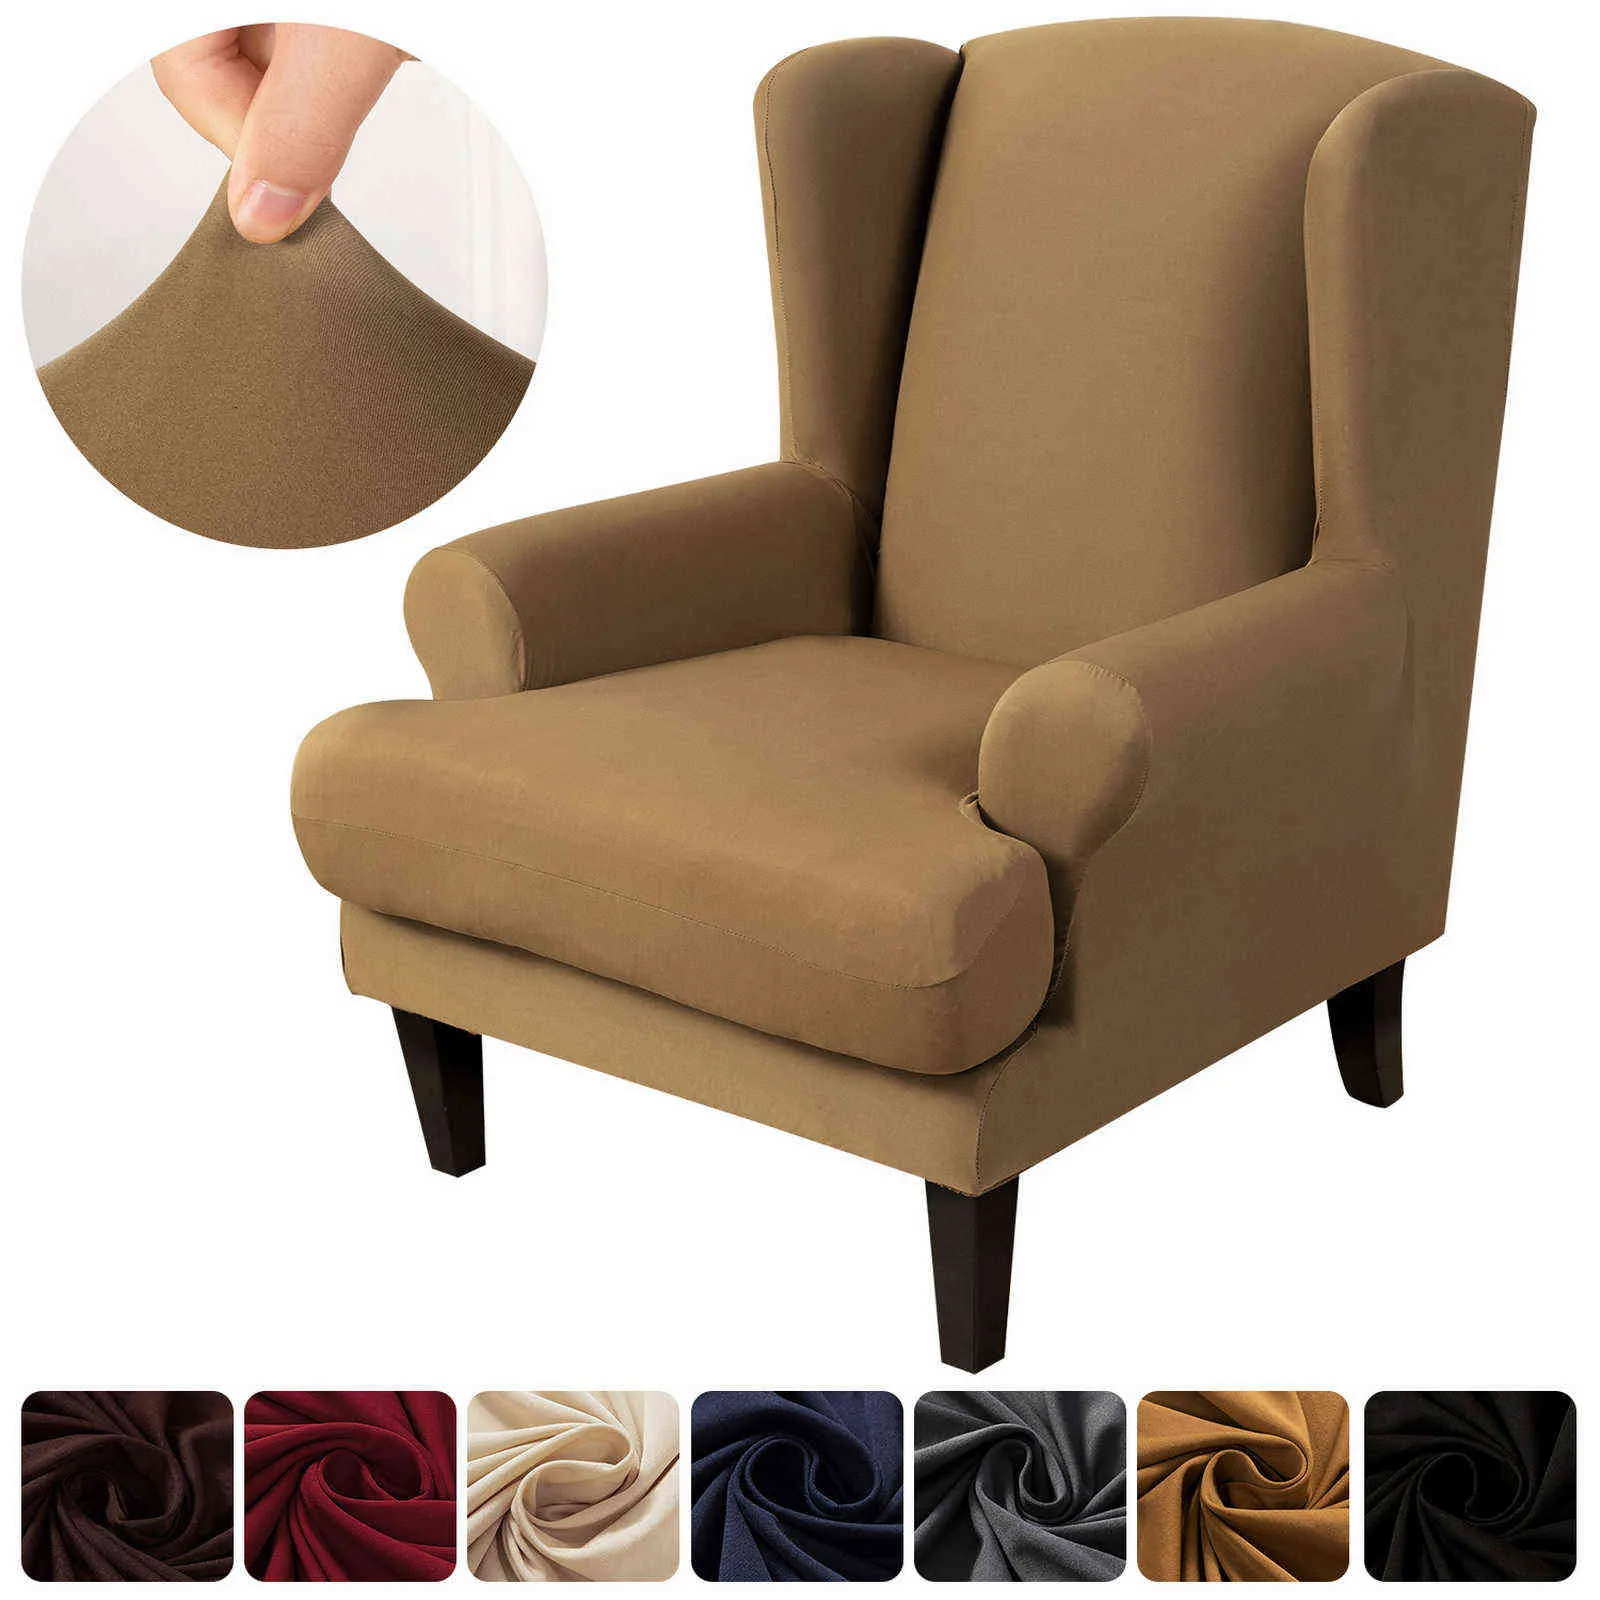 Fodera sedia con schienale inclinato impermeabile con bracciolo inclinato, poltrona elastica, protezione elasticizzata divano con schienale ad ala, facile da pulire 2111168726760